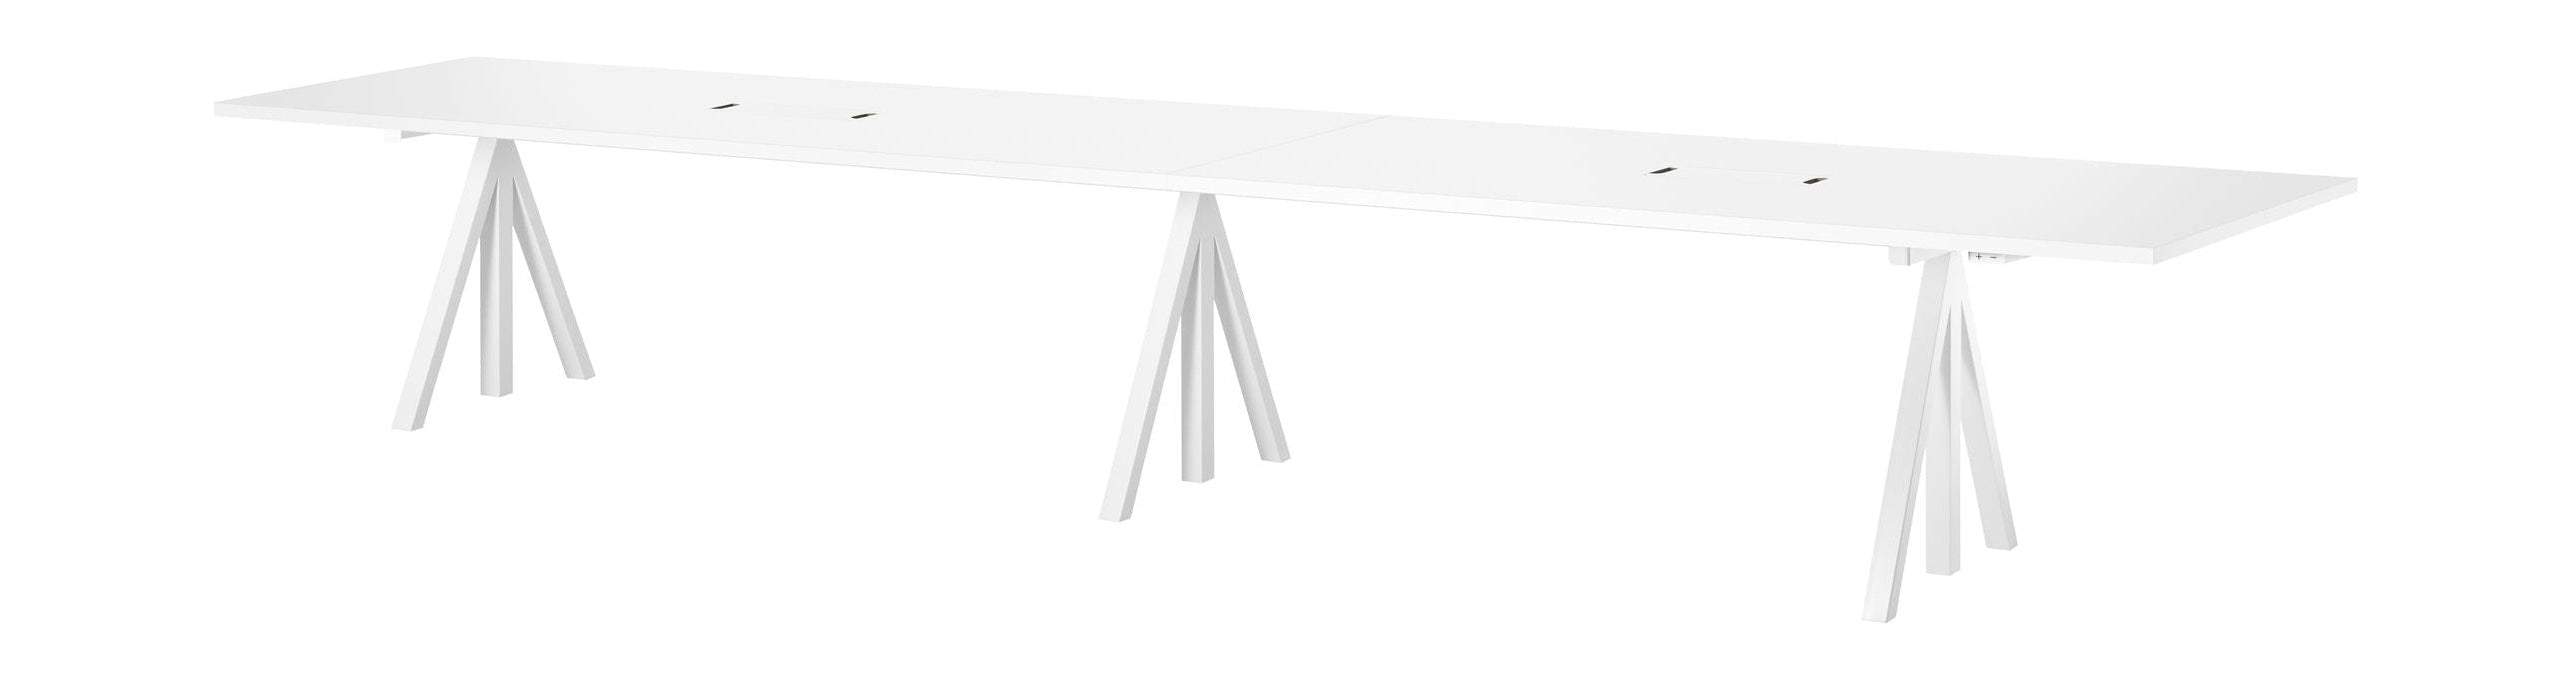 String Furniture Fungerar höjd justerbar möte tabell 90x180 cm, vit laminat